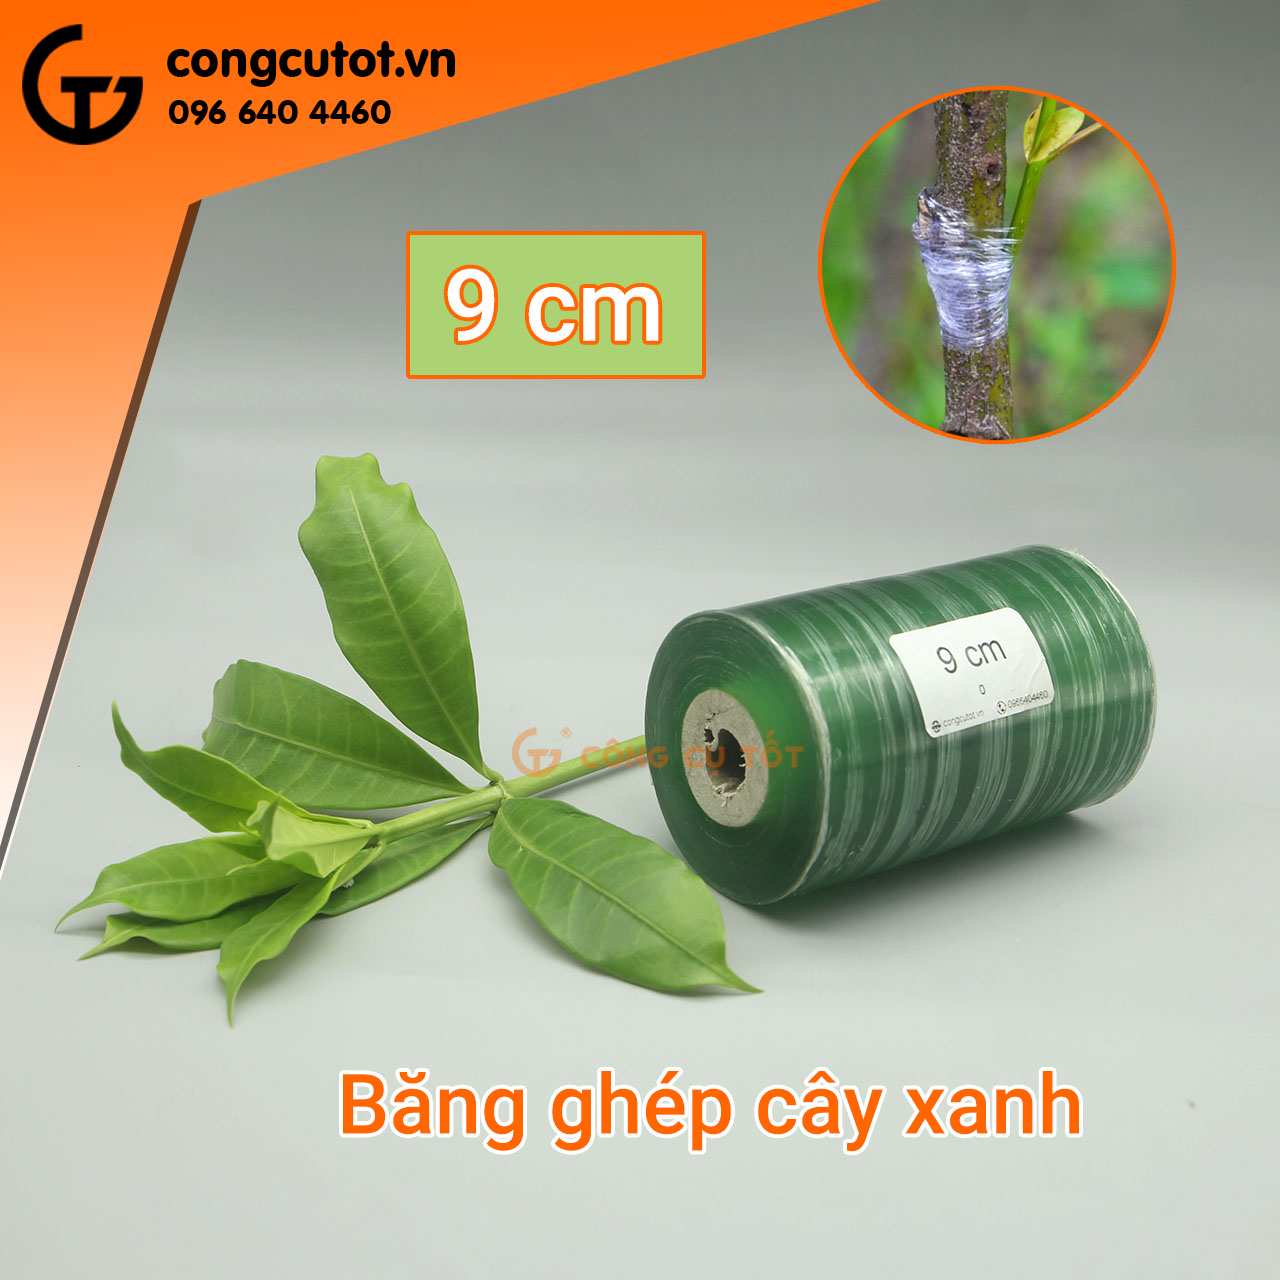 Băng ghép cây xanh khổ 9cm sử dụng rộng rãi, phổ biến trong nông nghiệp